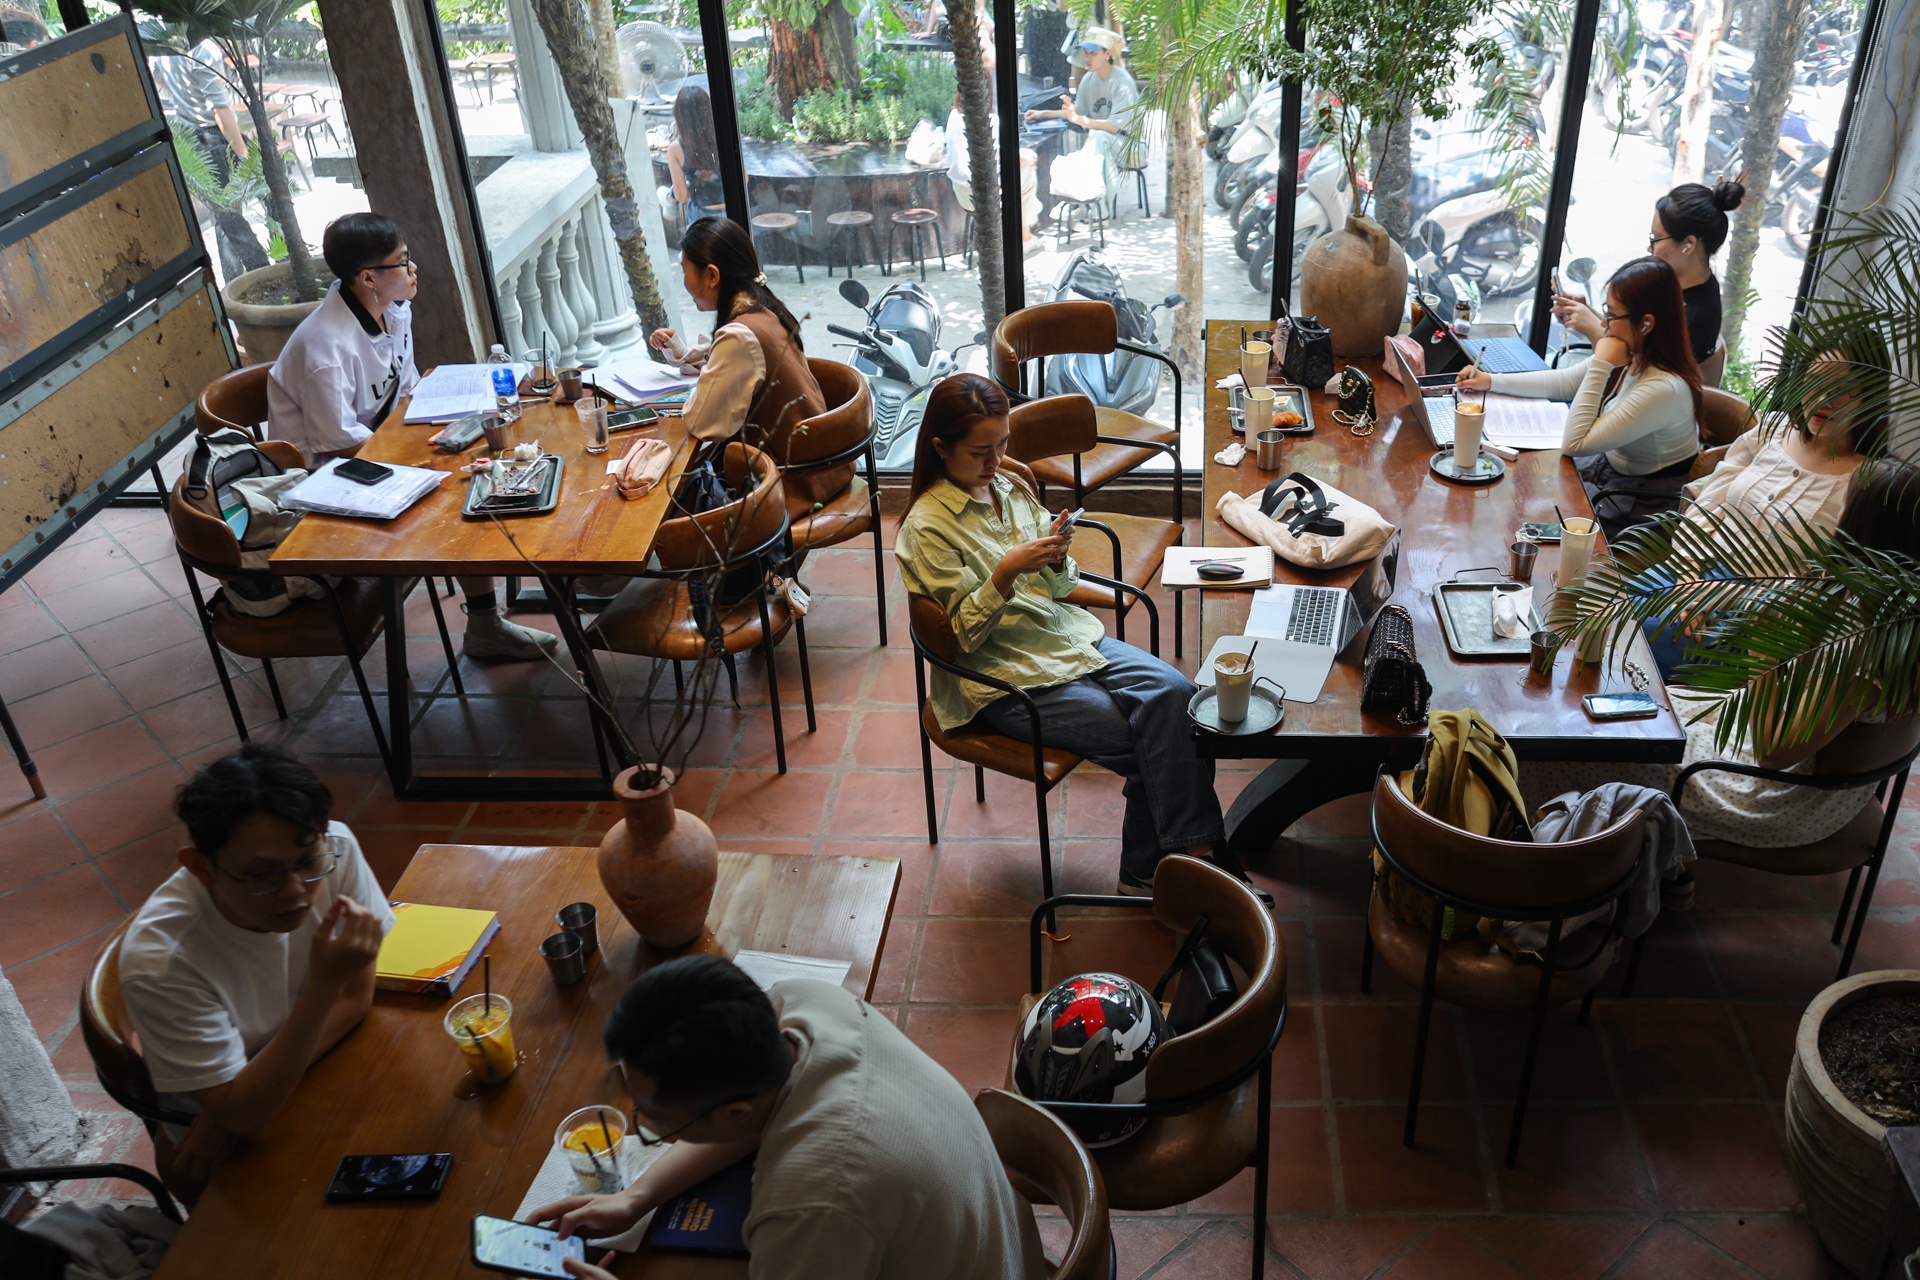 Giới trẻ TP.HCM ôm laptop chạy deadline trong quán cà phê ngày nghỉ lễ - ảnh 1